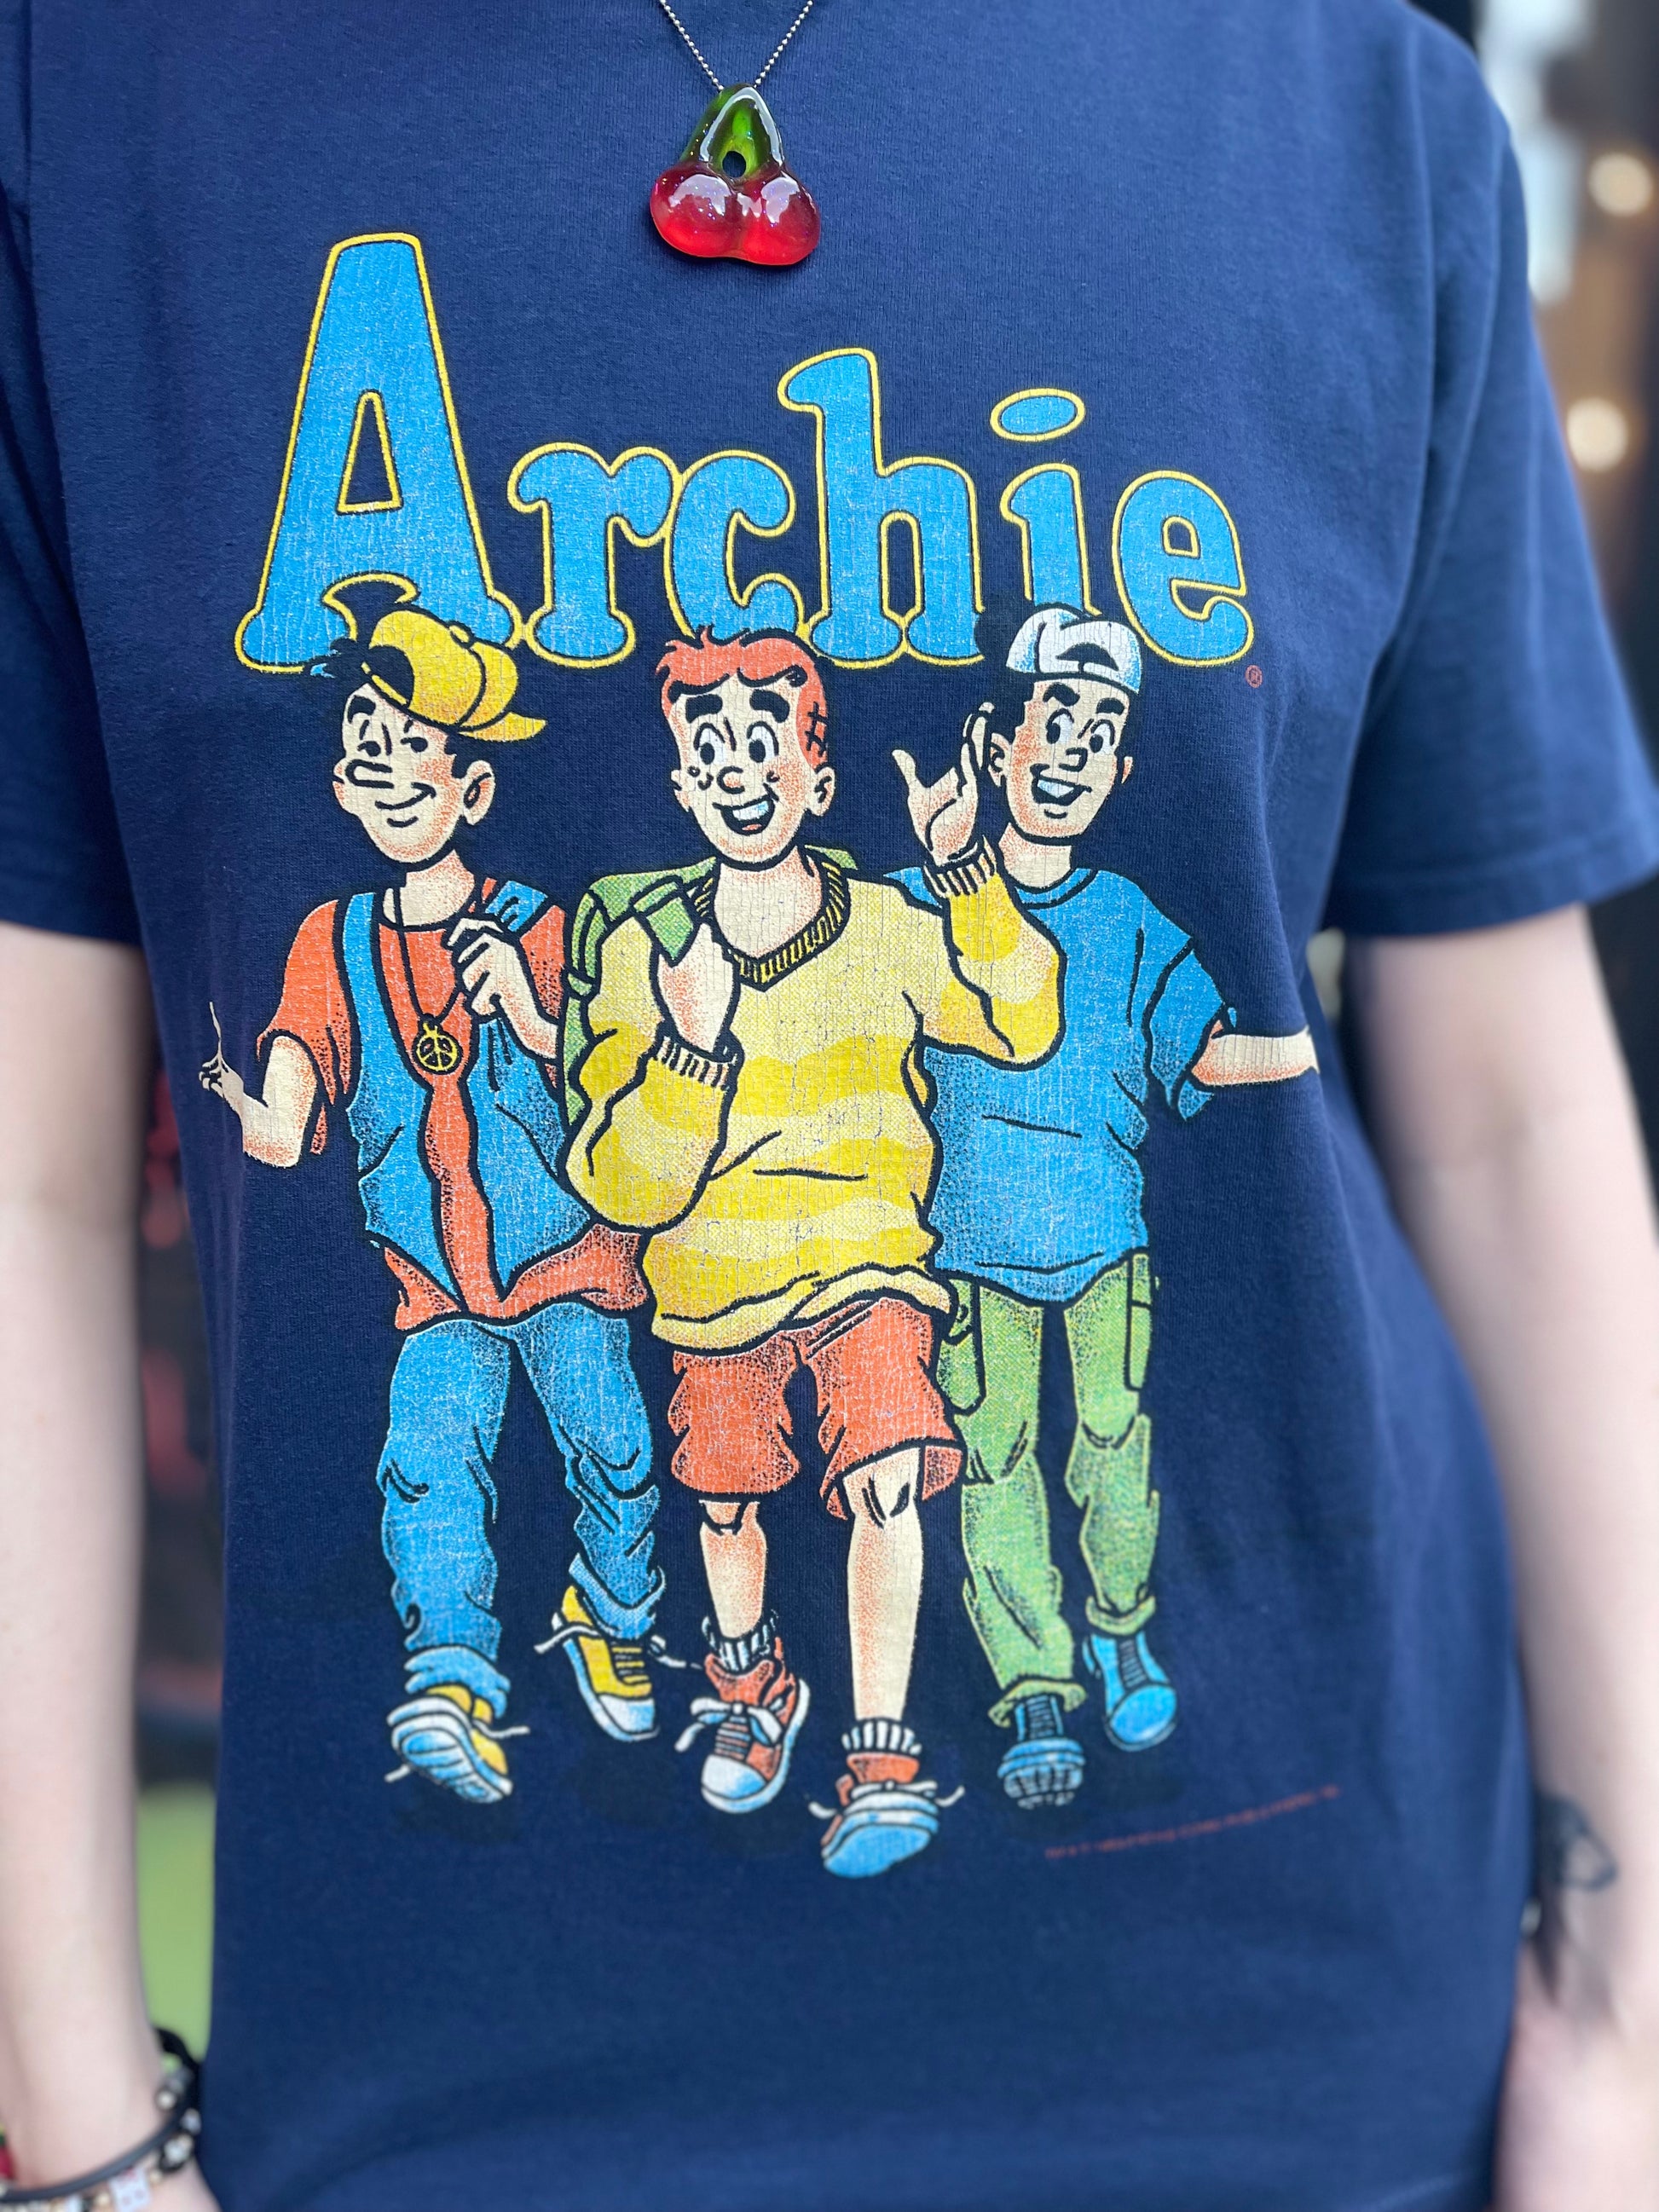 Vintage 1993 Archie T-shirt - Spark Pretty